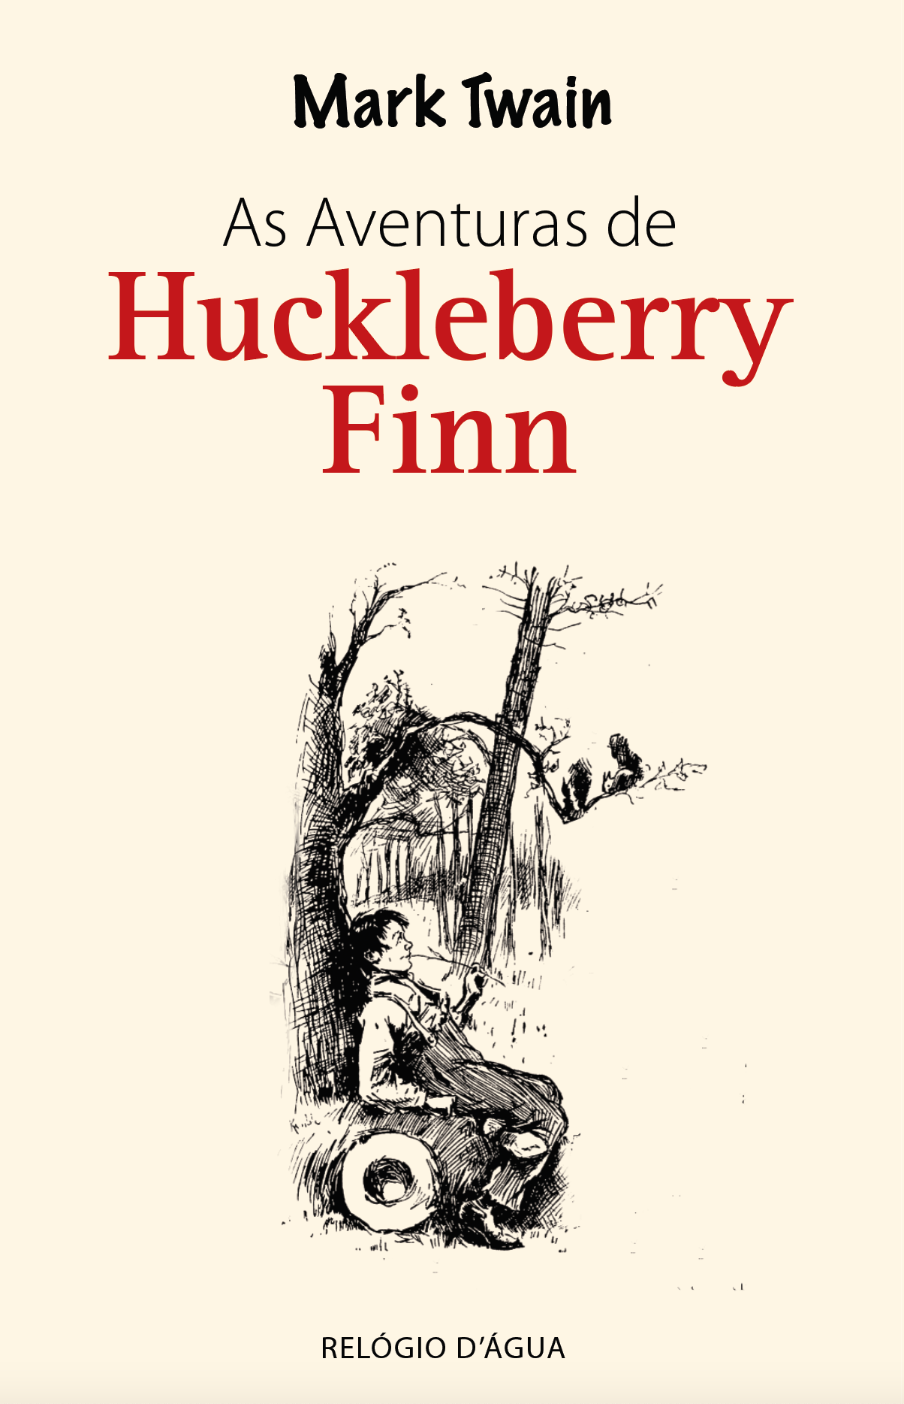 The Adventures of Huckberry Finn, by Mark Twain